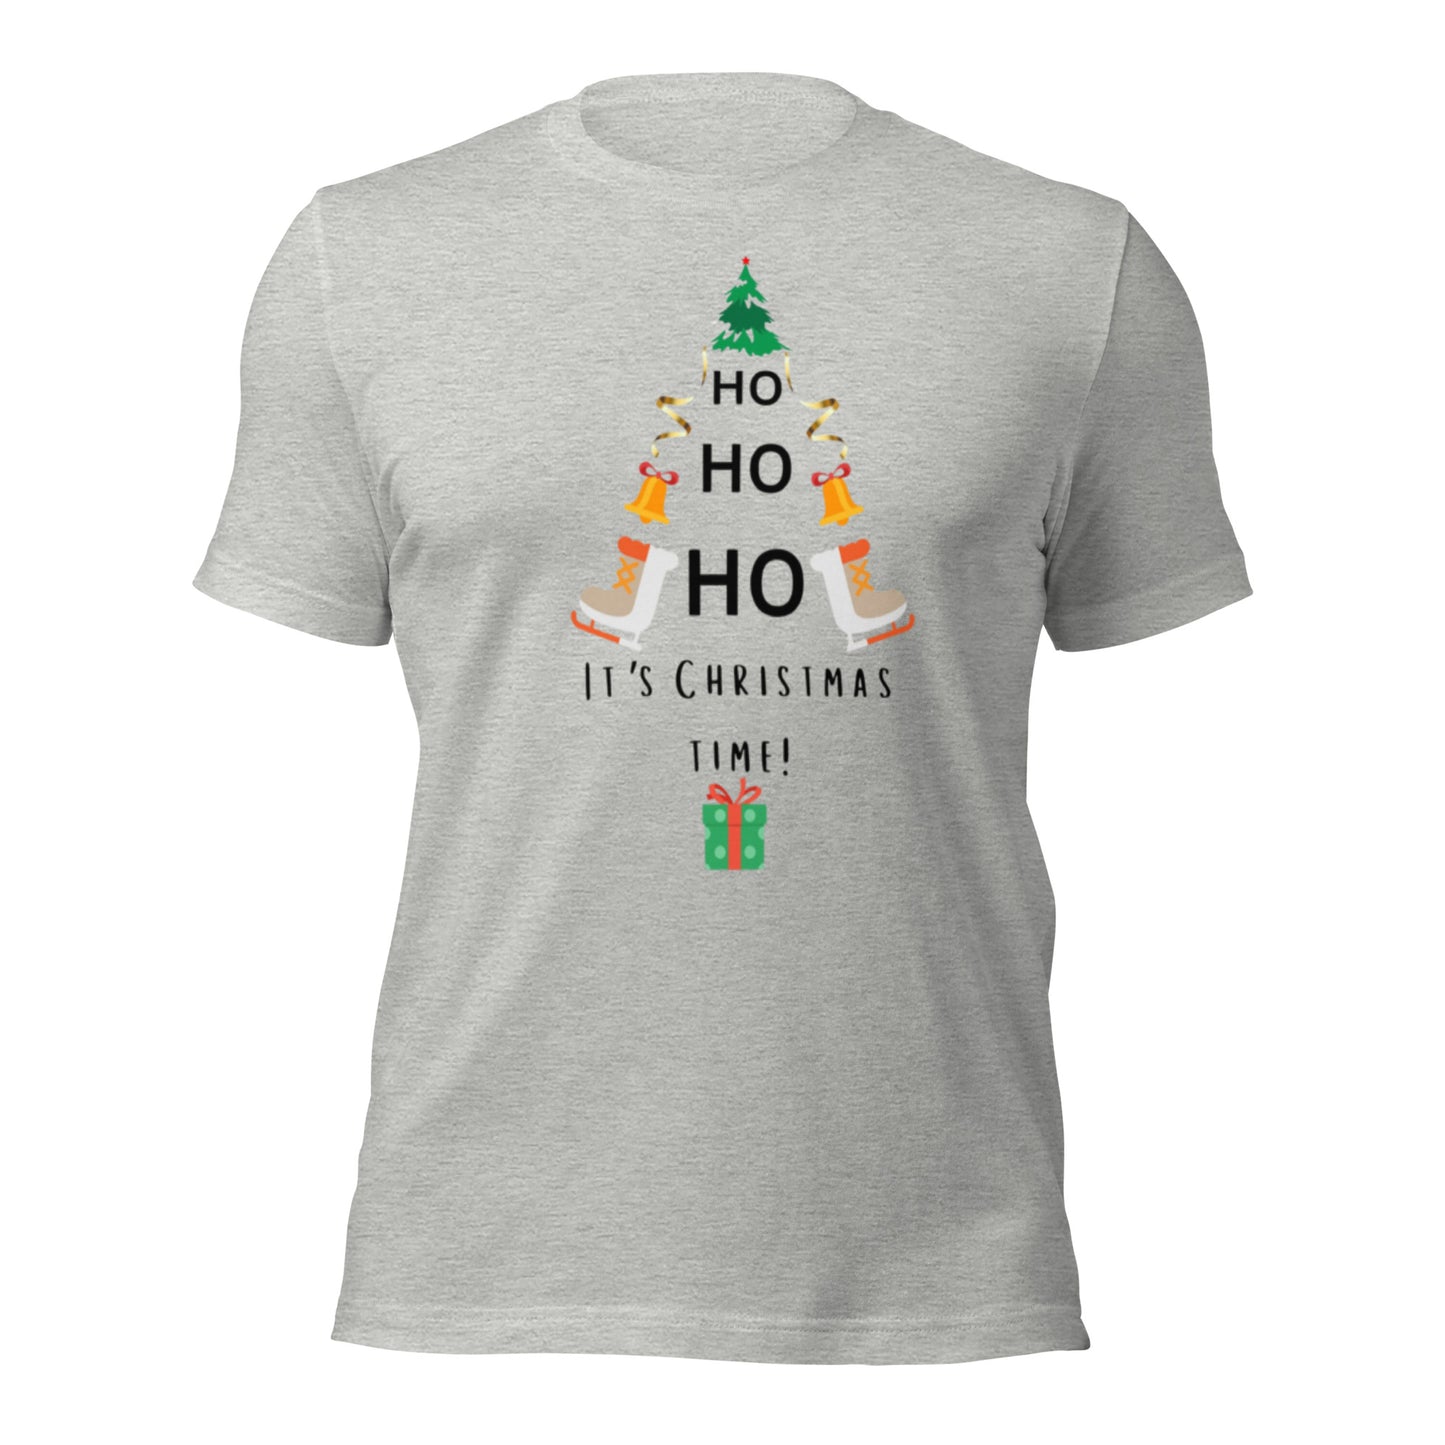 Ho Ho Christmas Unisex t-shirt